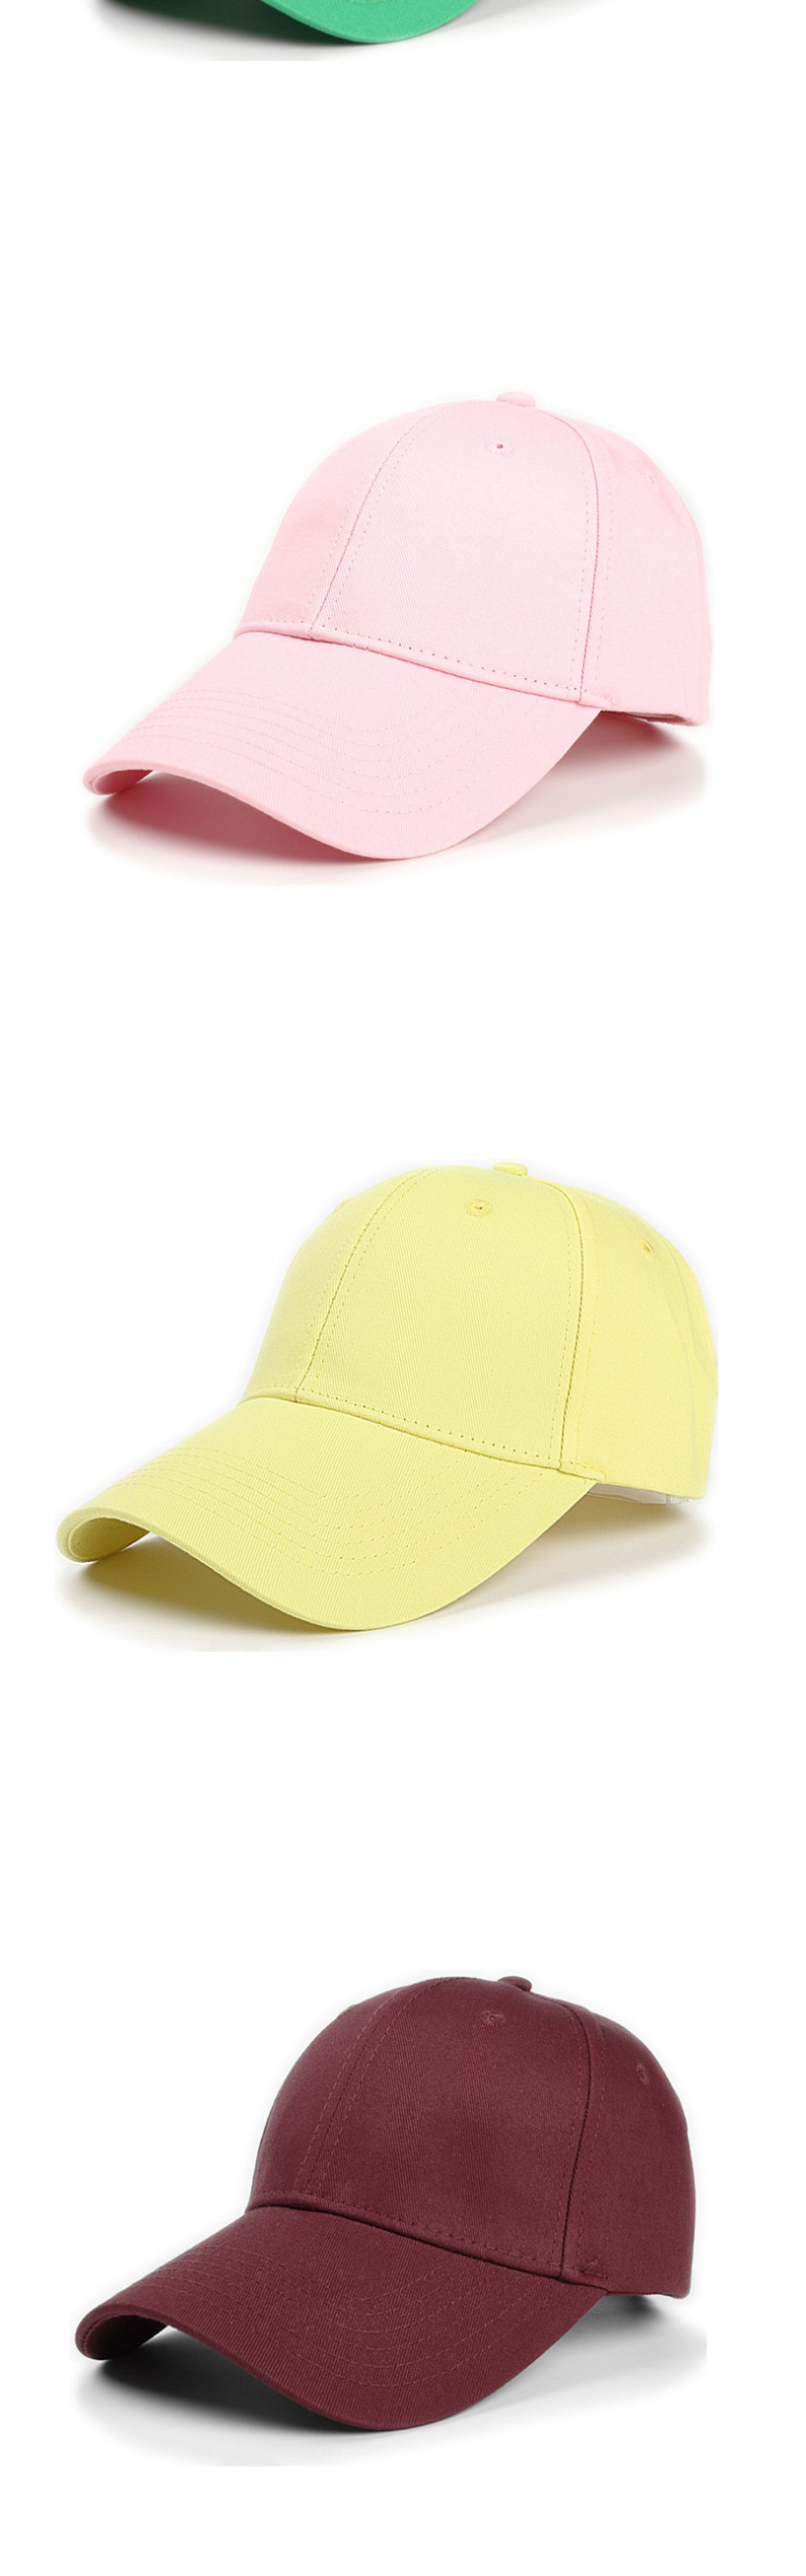 Fashion Yellow Cotton Hard Top And Long Brim Baseball Cap,Baseball Caps